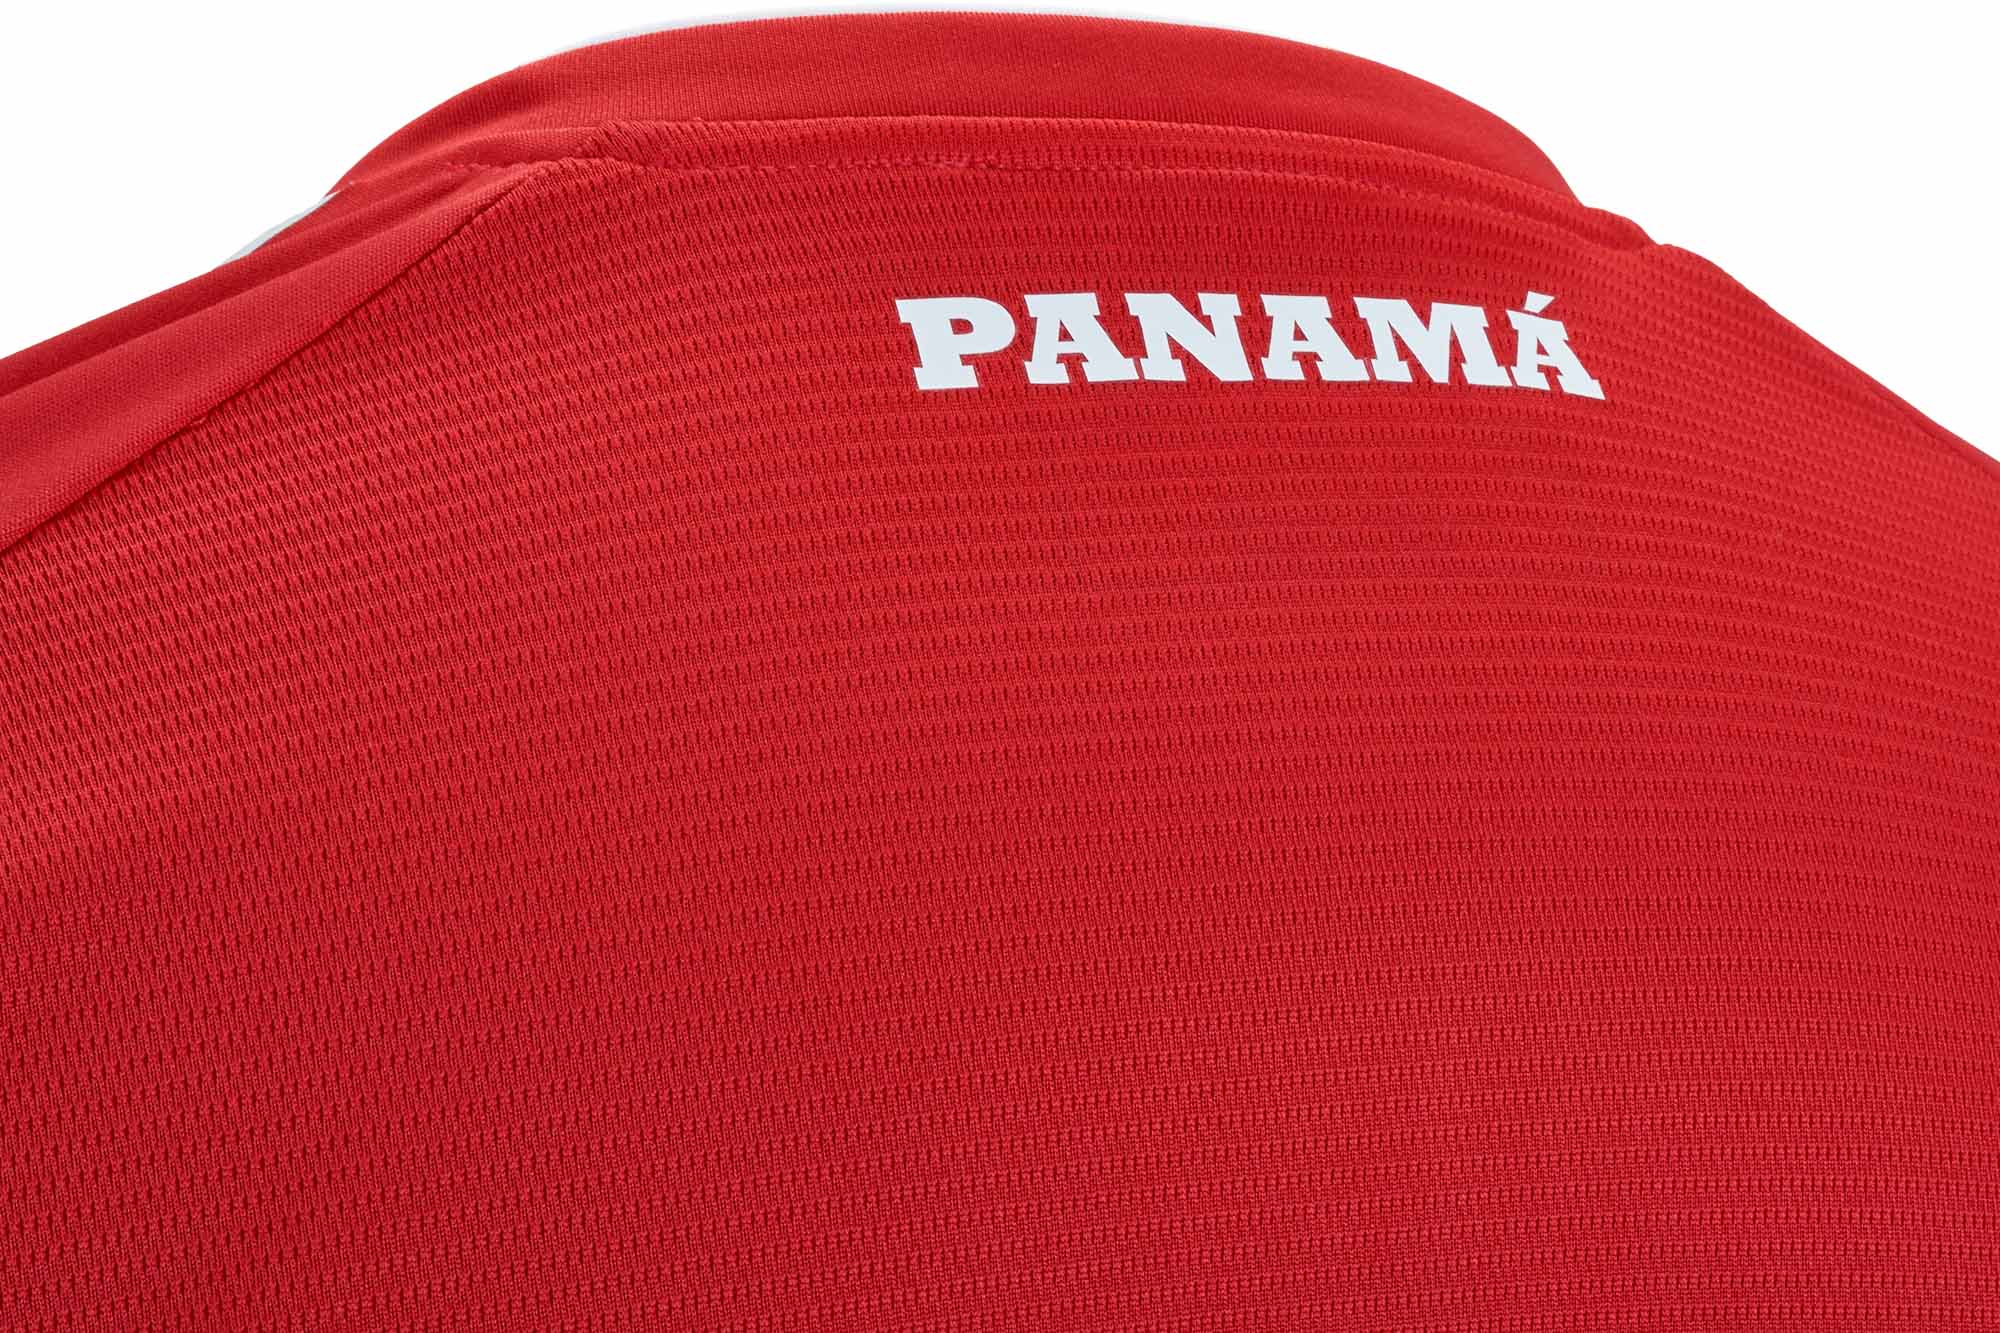 new balance panama women's home jersey 2018